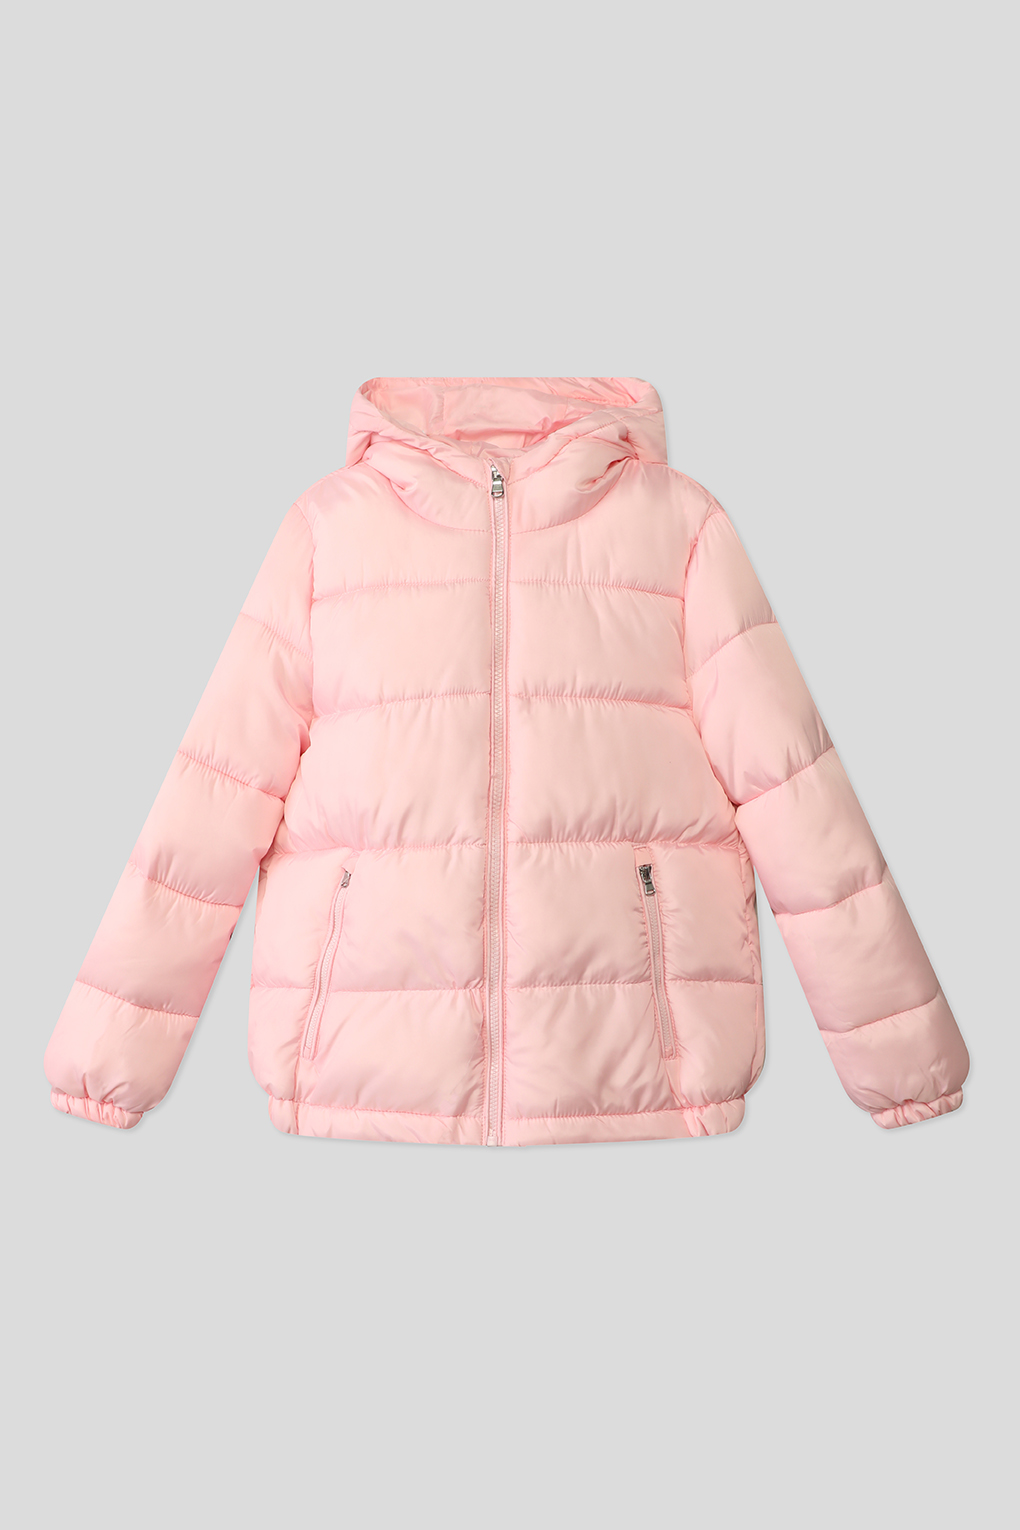 Куртка утепленная для девочек OVS, розовый 158р.